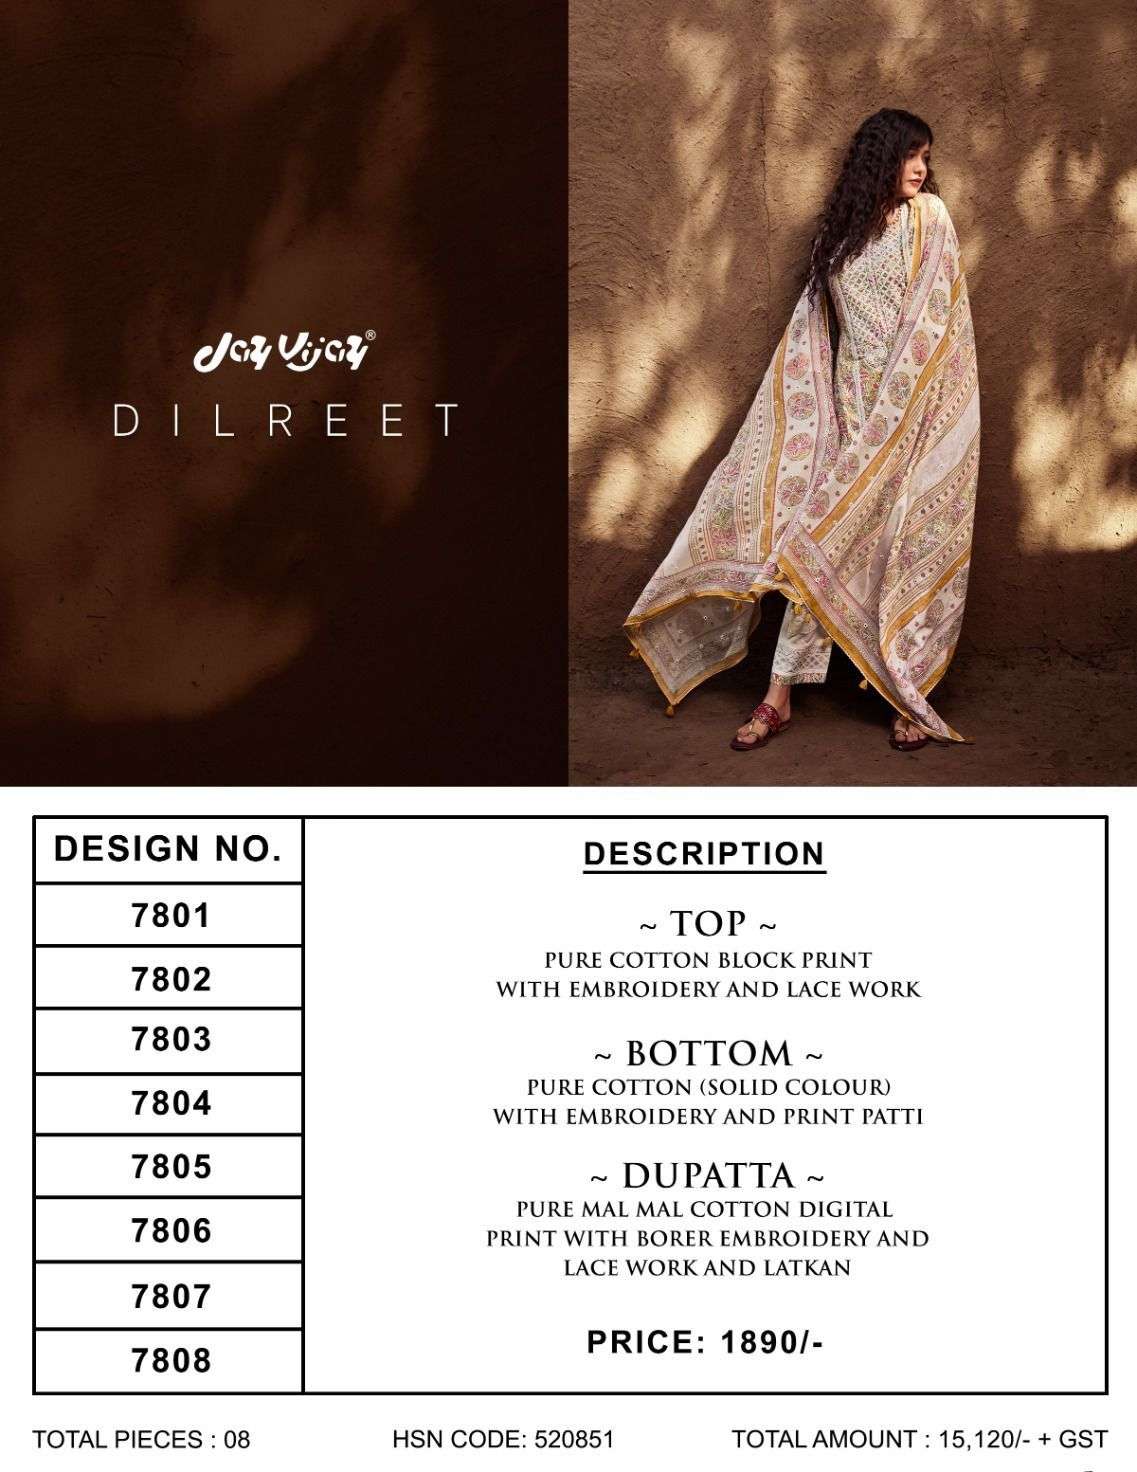 jayvijay dilpreet 7801-7808 series pure cotton salwar kameez wholesale price surat